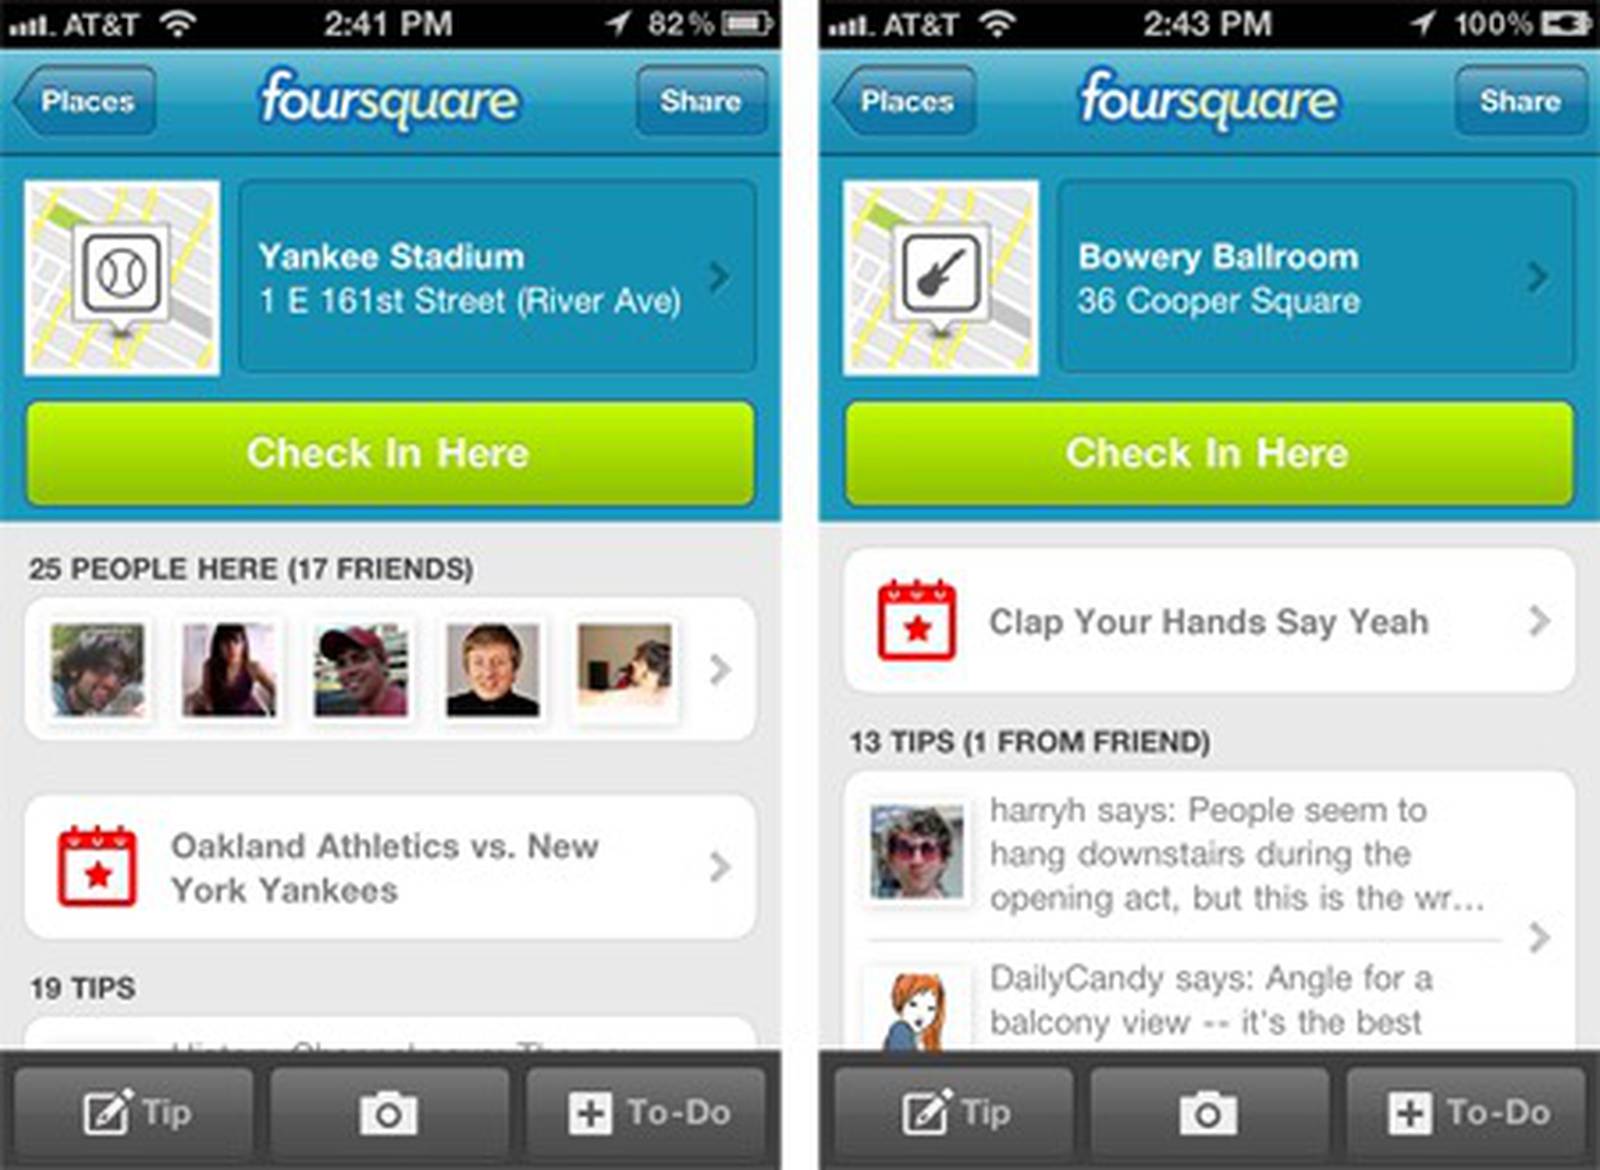 Eventos deportivos y de ocio en Foursquare (Solo iPhone por ahora)